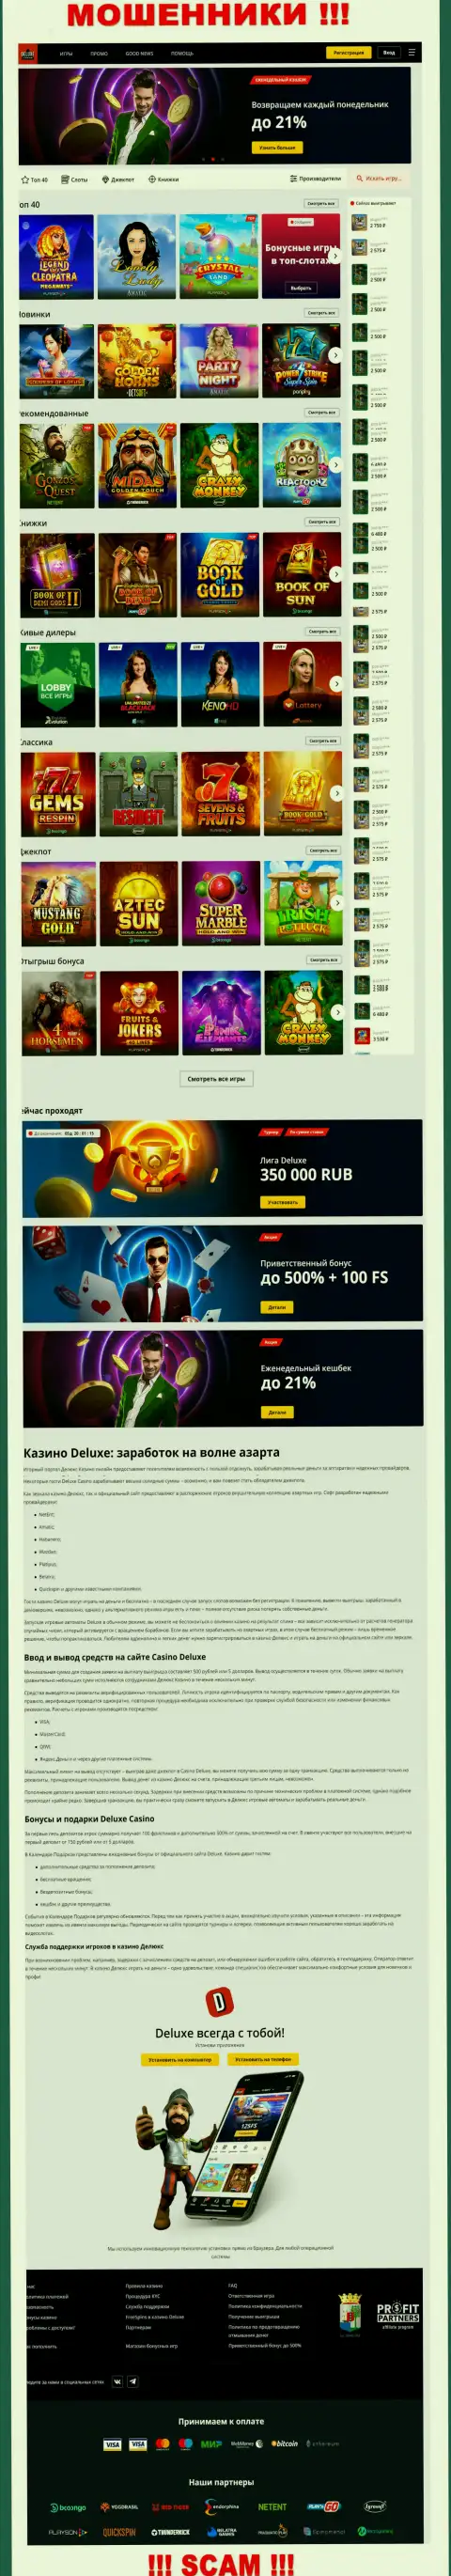 Официальная страница организации Deluxe Casino